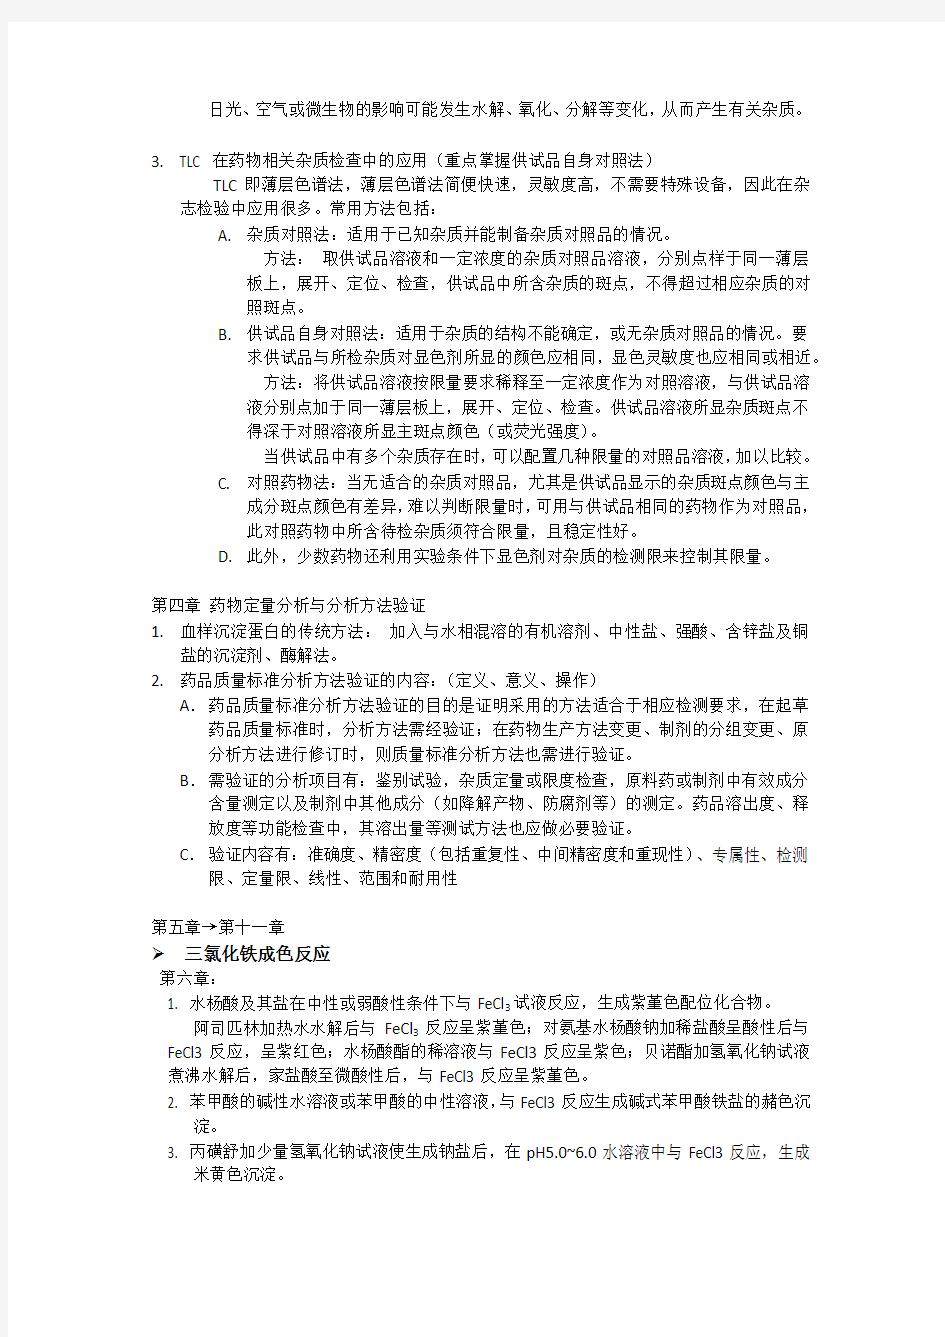 中国海洋大学2013年秋季学期 医药学院 药物分析 期末考试重点总结